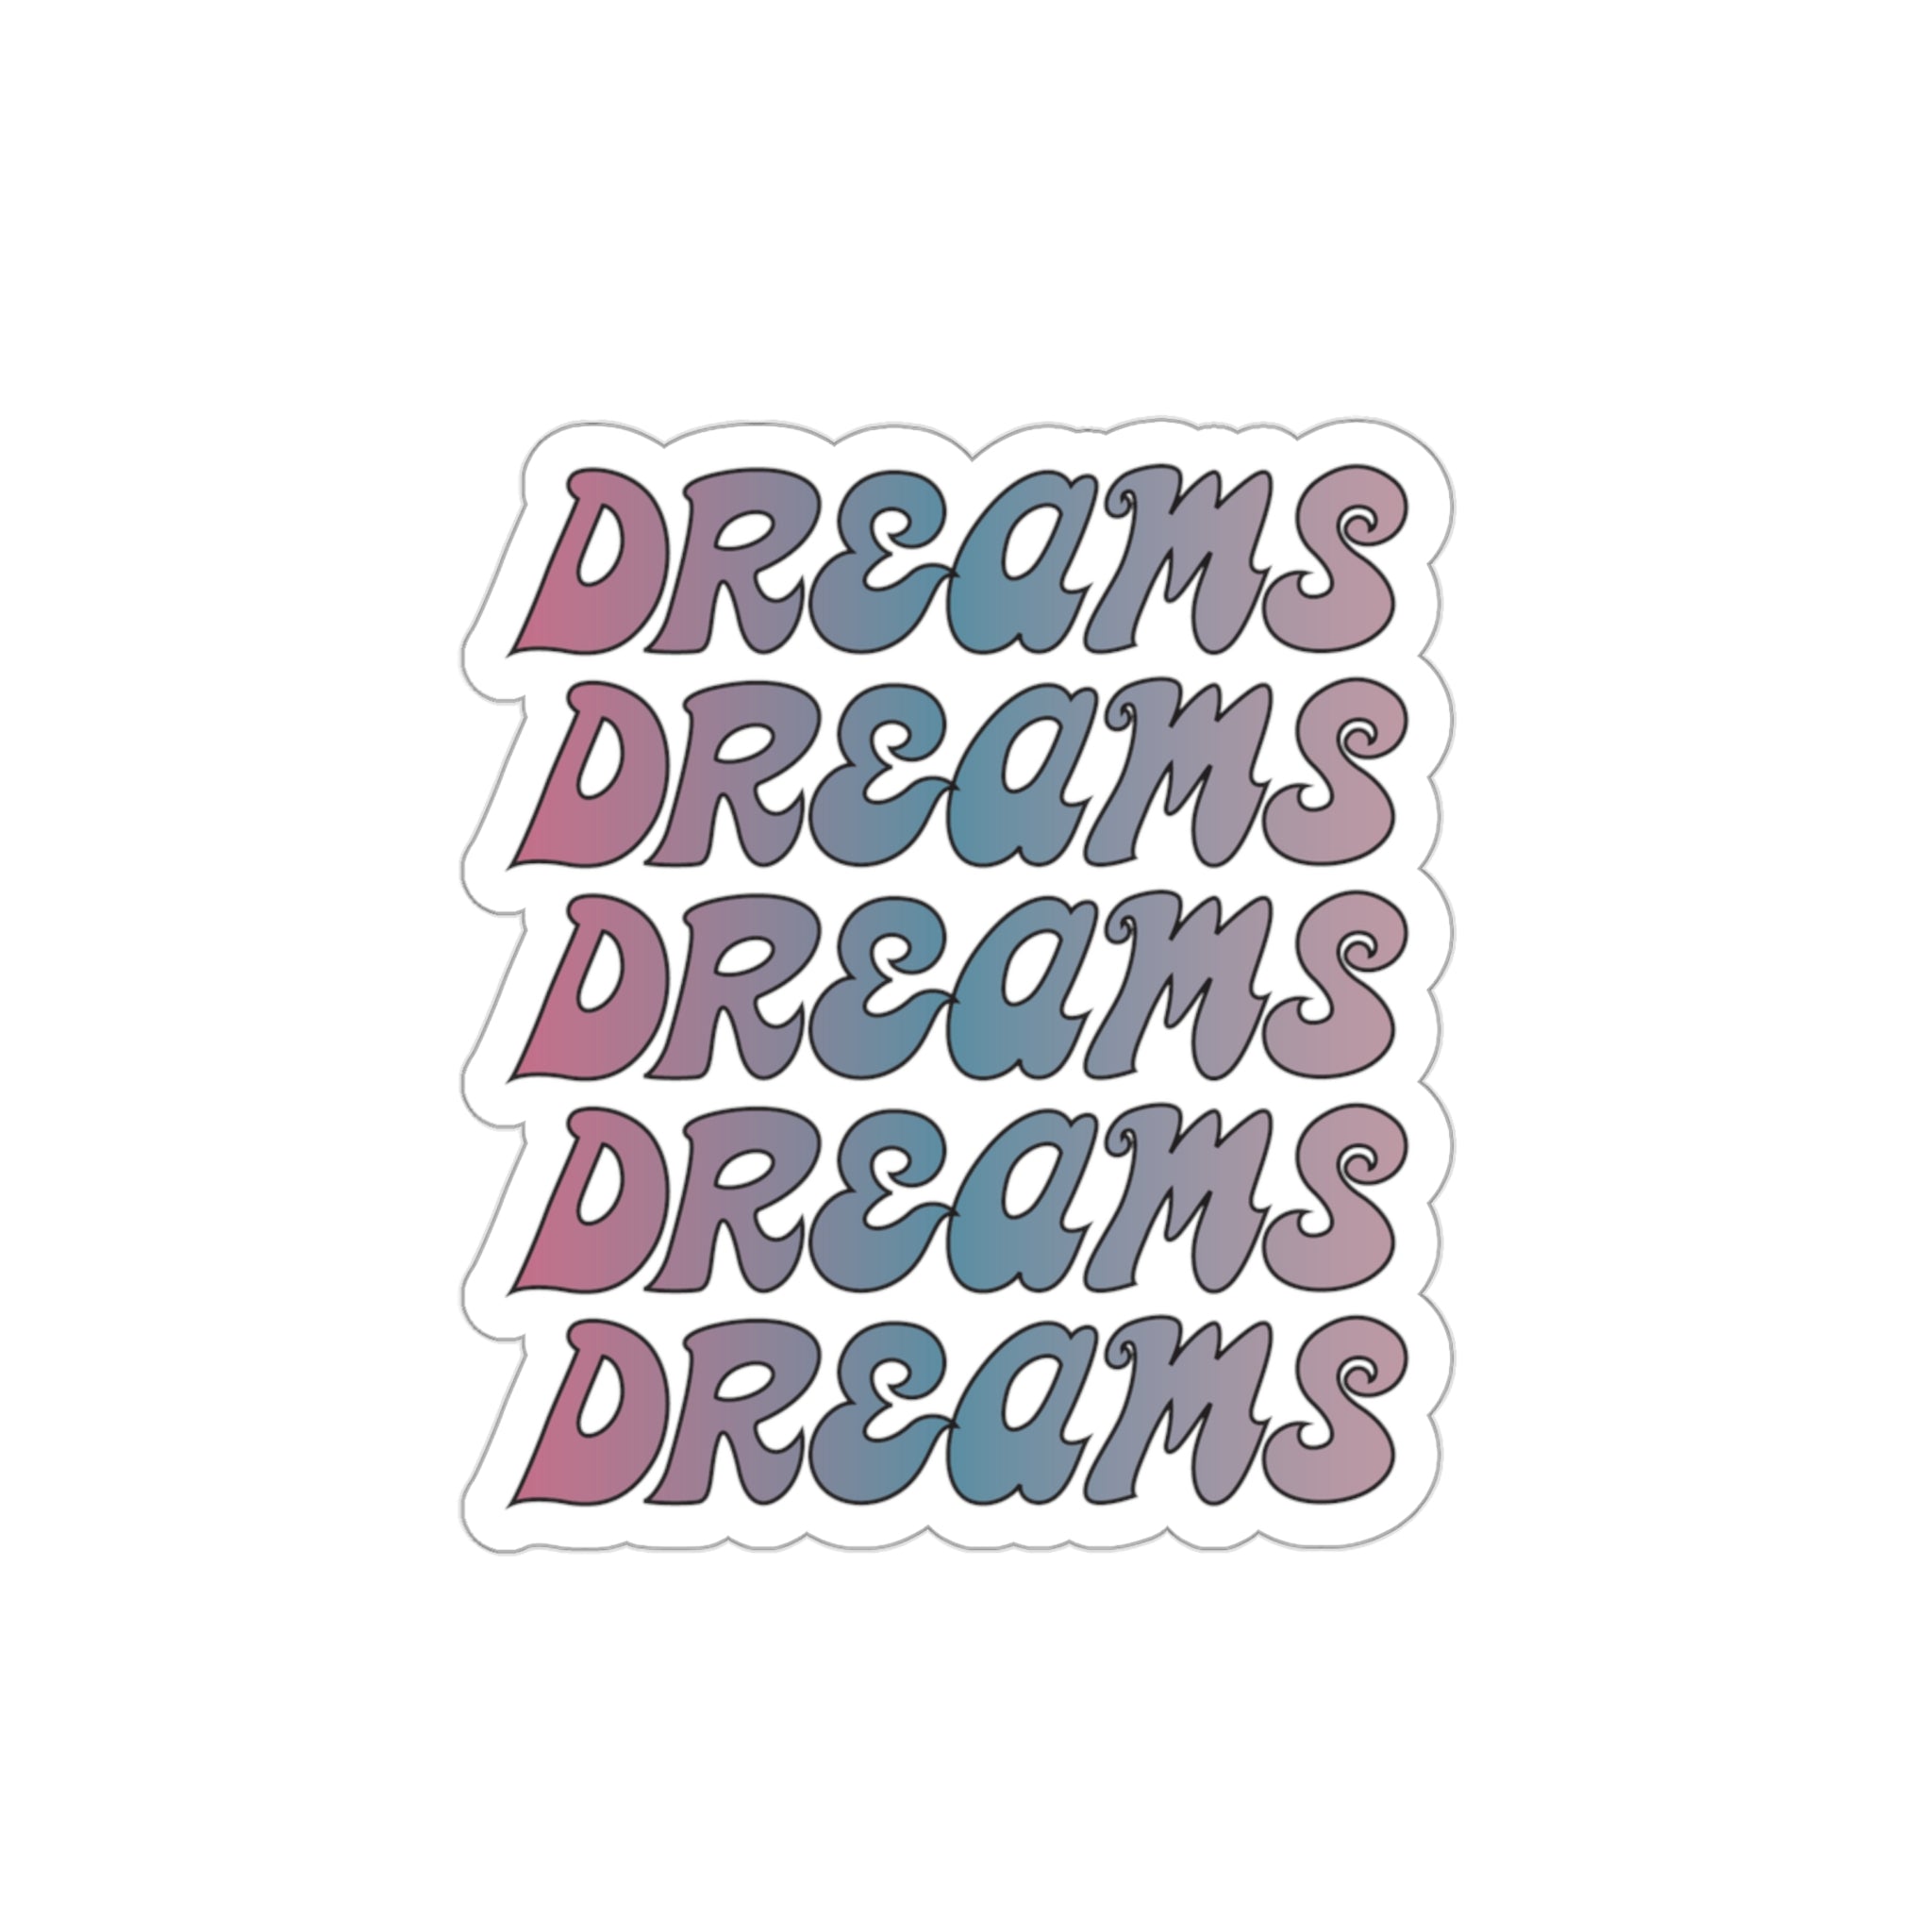 Dreams sticker #size_3x3-inches